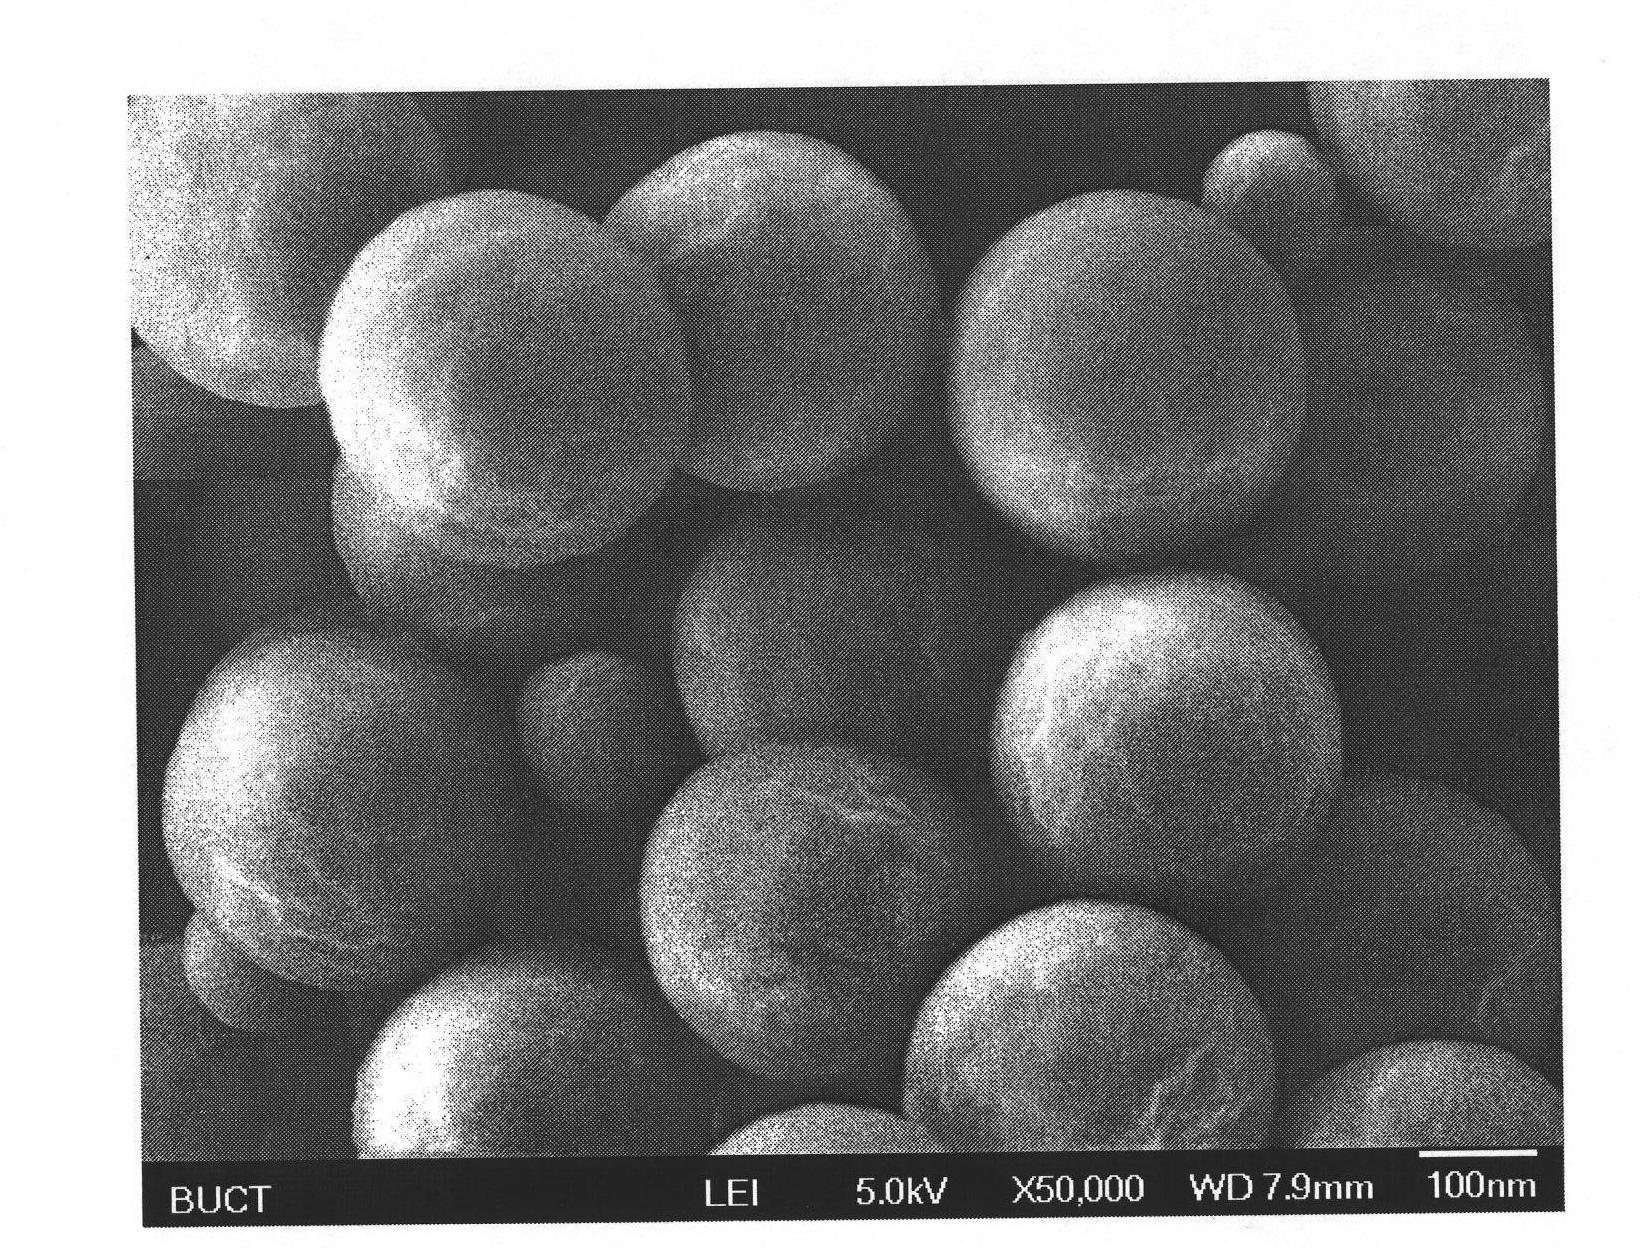 Preparation method of punicalagin molecular imprinted polymer microspheres